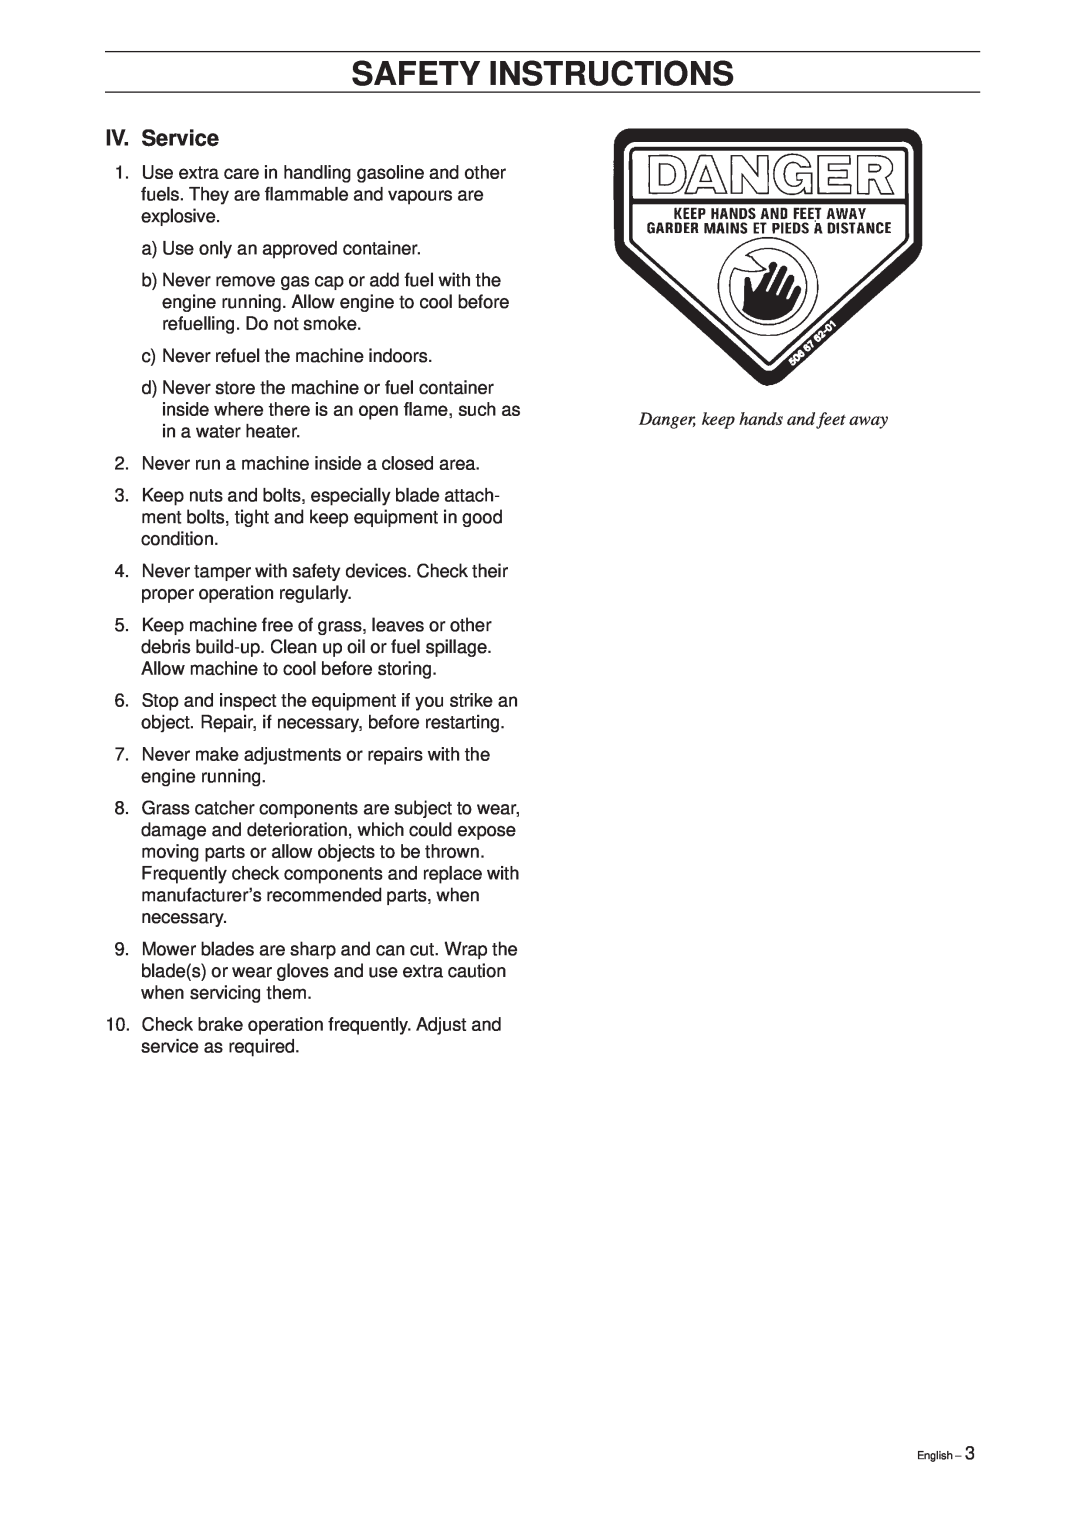 Husqvarna 1030 BioClip, 1200 manual IV. Service, Safety Instructions 